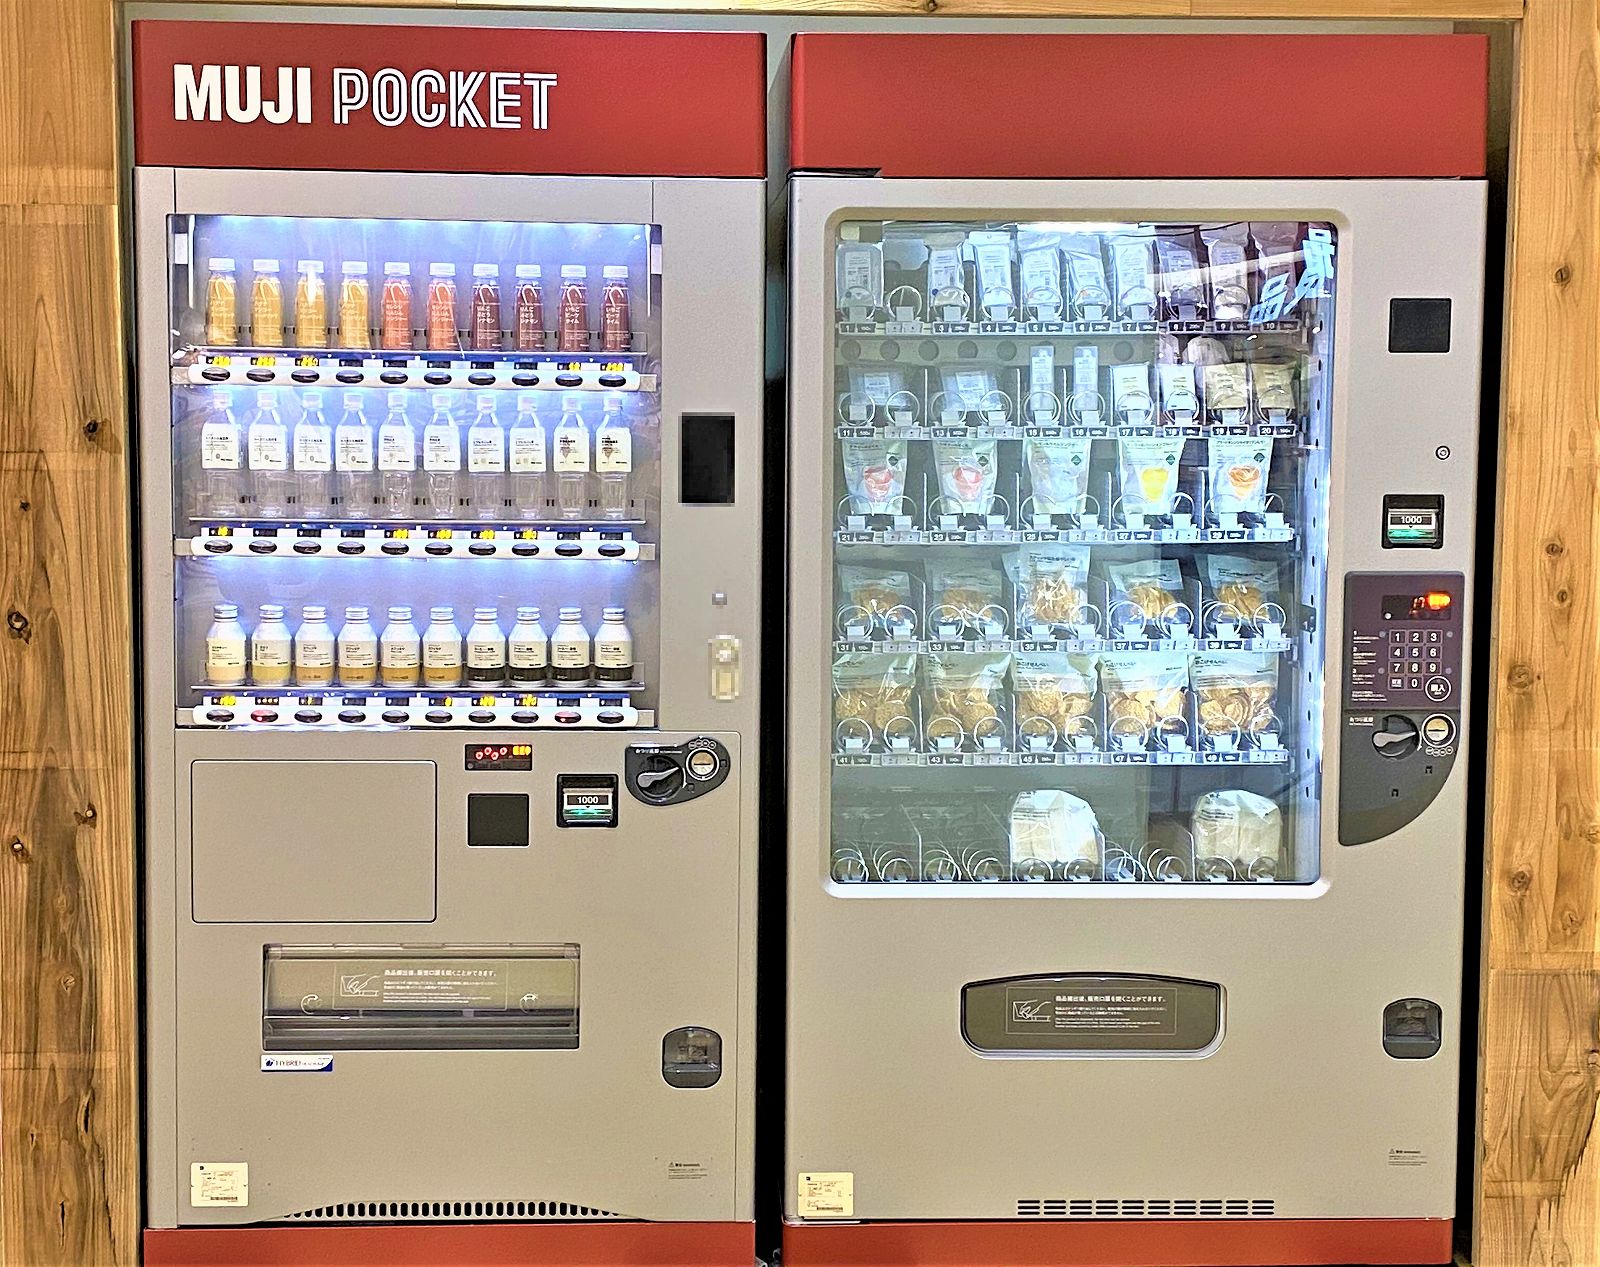 無印の自動販売機 アクタ西宮にある無印良品の自販機 Muji Pocket で購入してみた 無印良品 自販機 自動販売機 Muji Pocket 西宮 無印 東灘ジャーナル